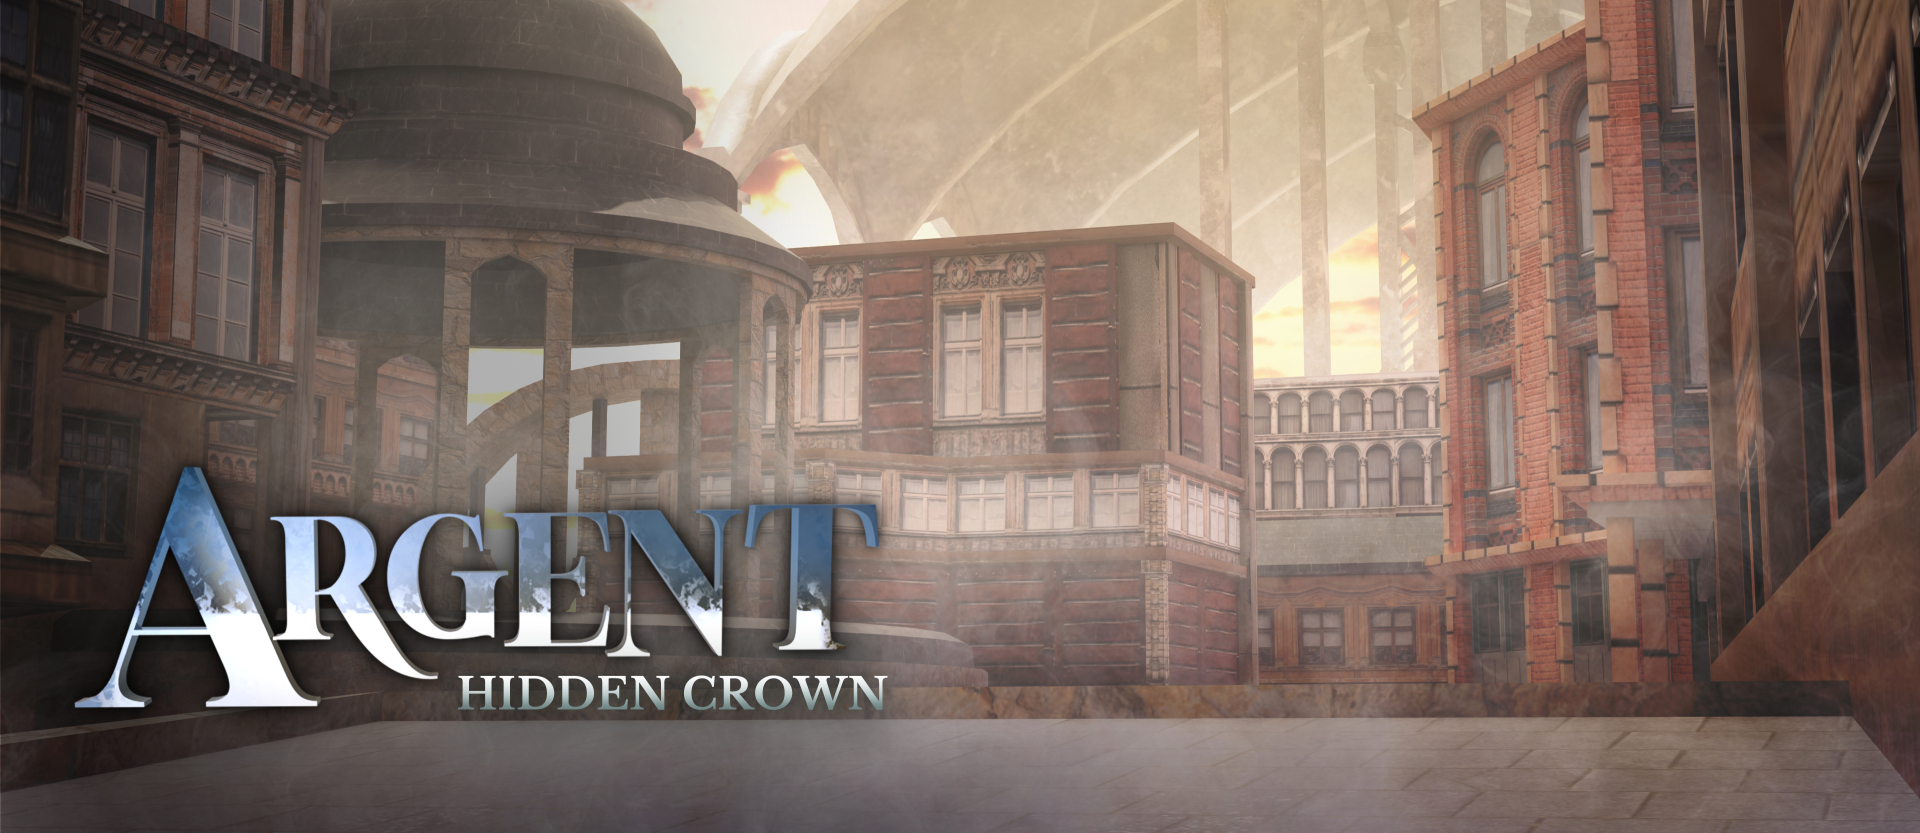 Argent: Hidden Crown